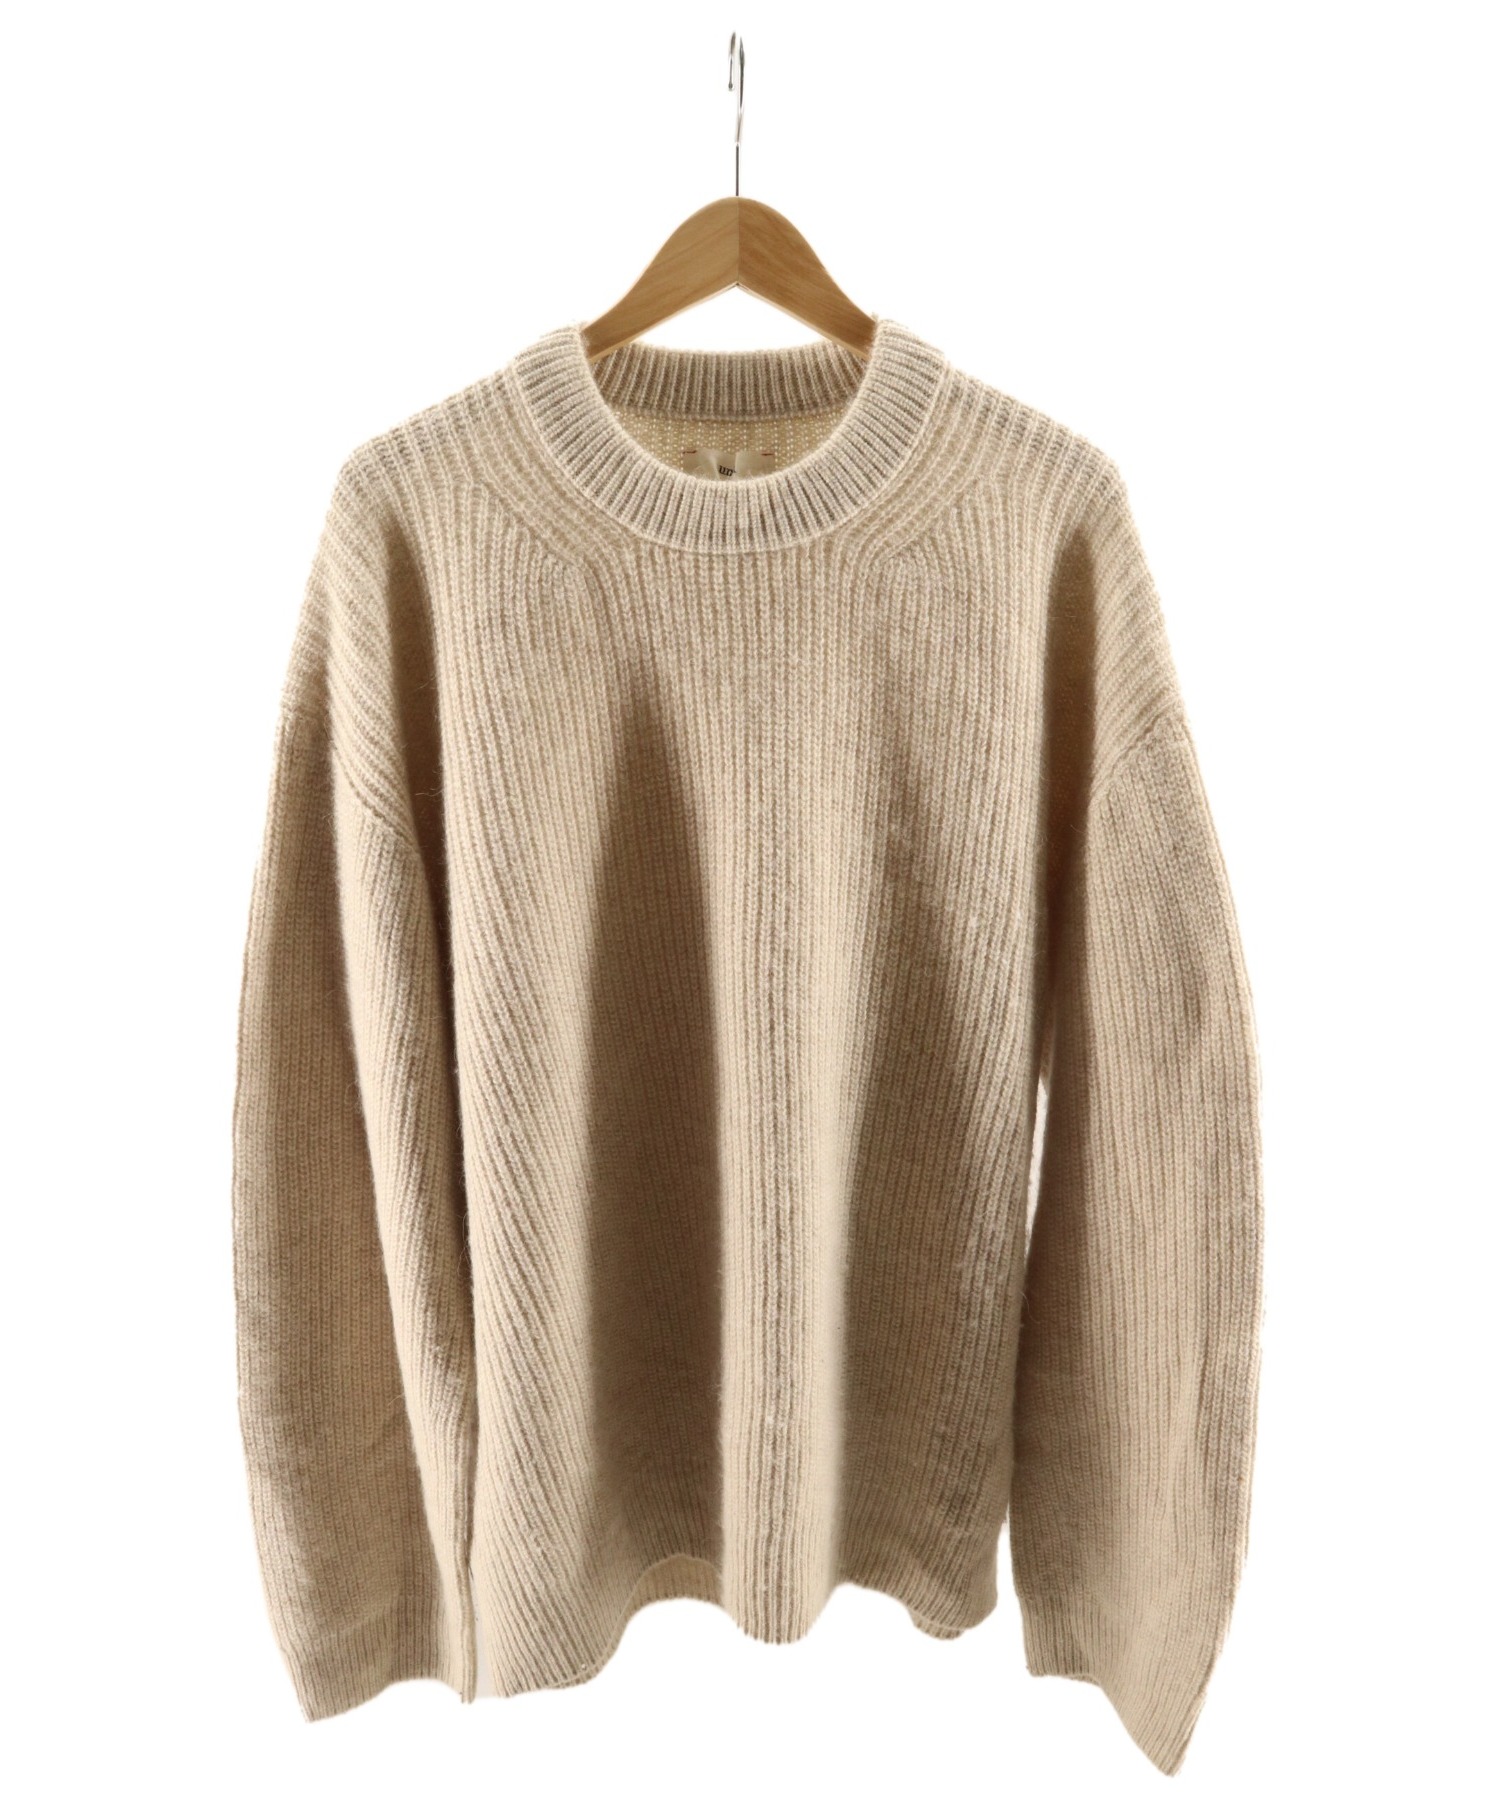 アンフィルroyal baby alpaca sweater セーター ベージュ-